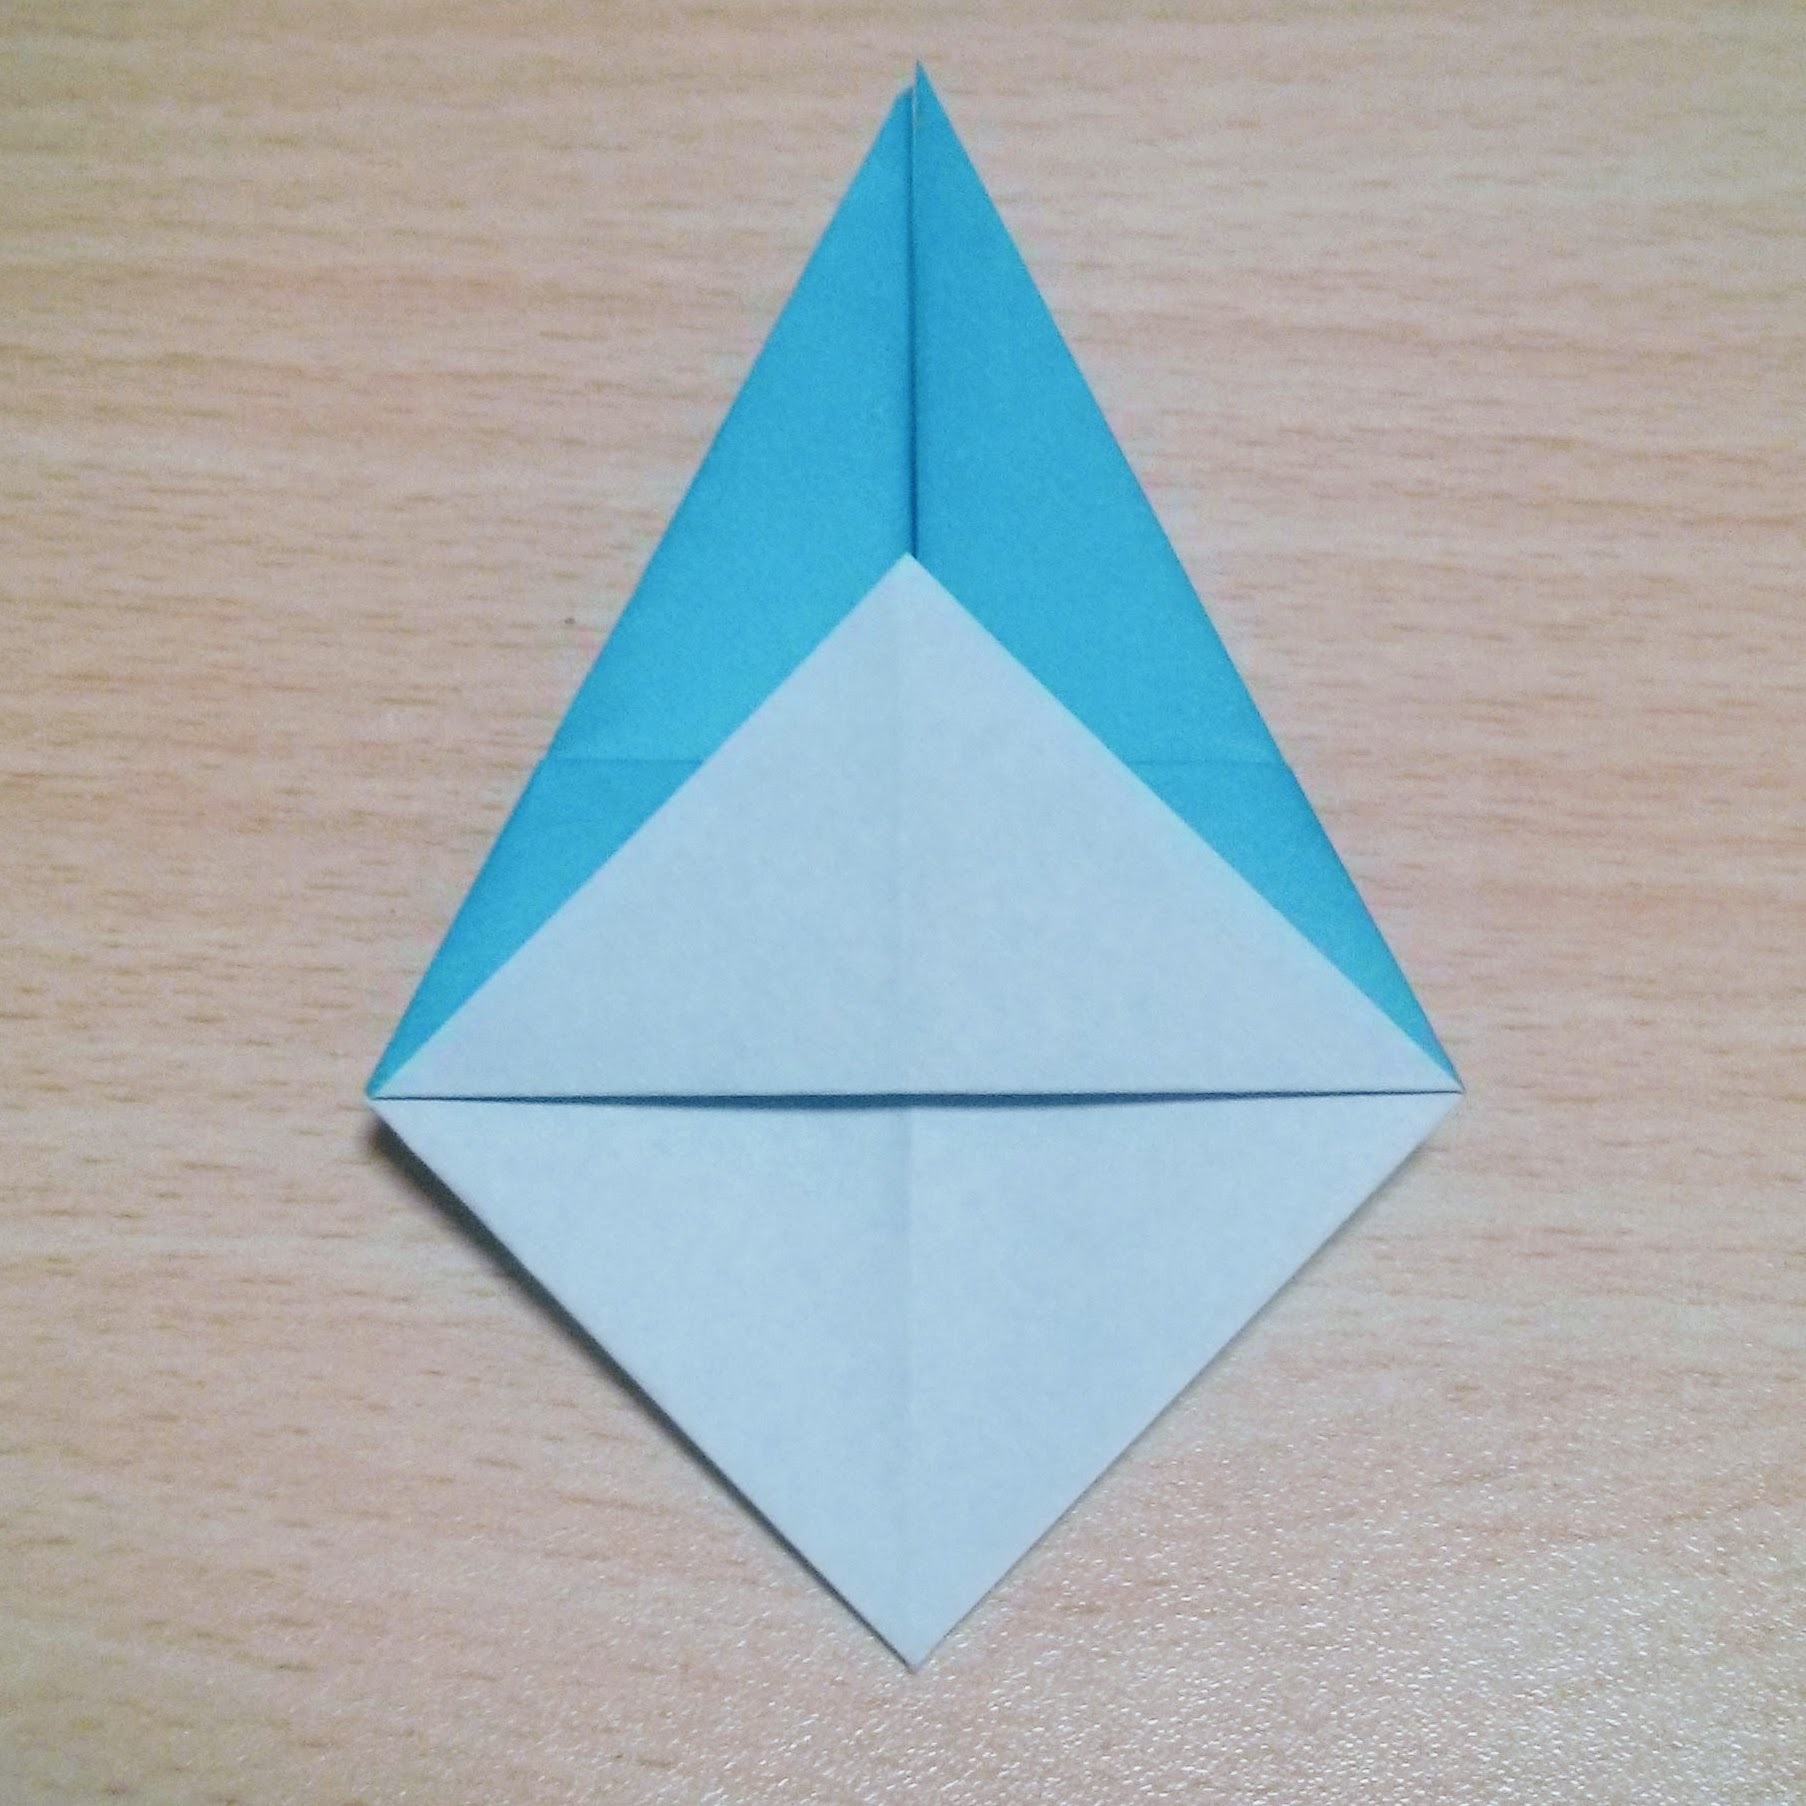 ジブリキャラクター トロロ の折り紙での折り方 平面 立体の作り方まとめ 4ページ目 暮らし の